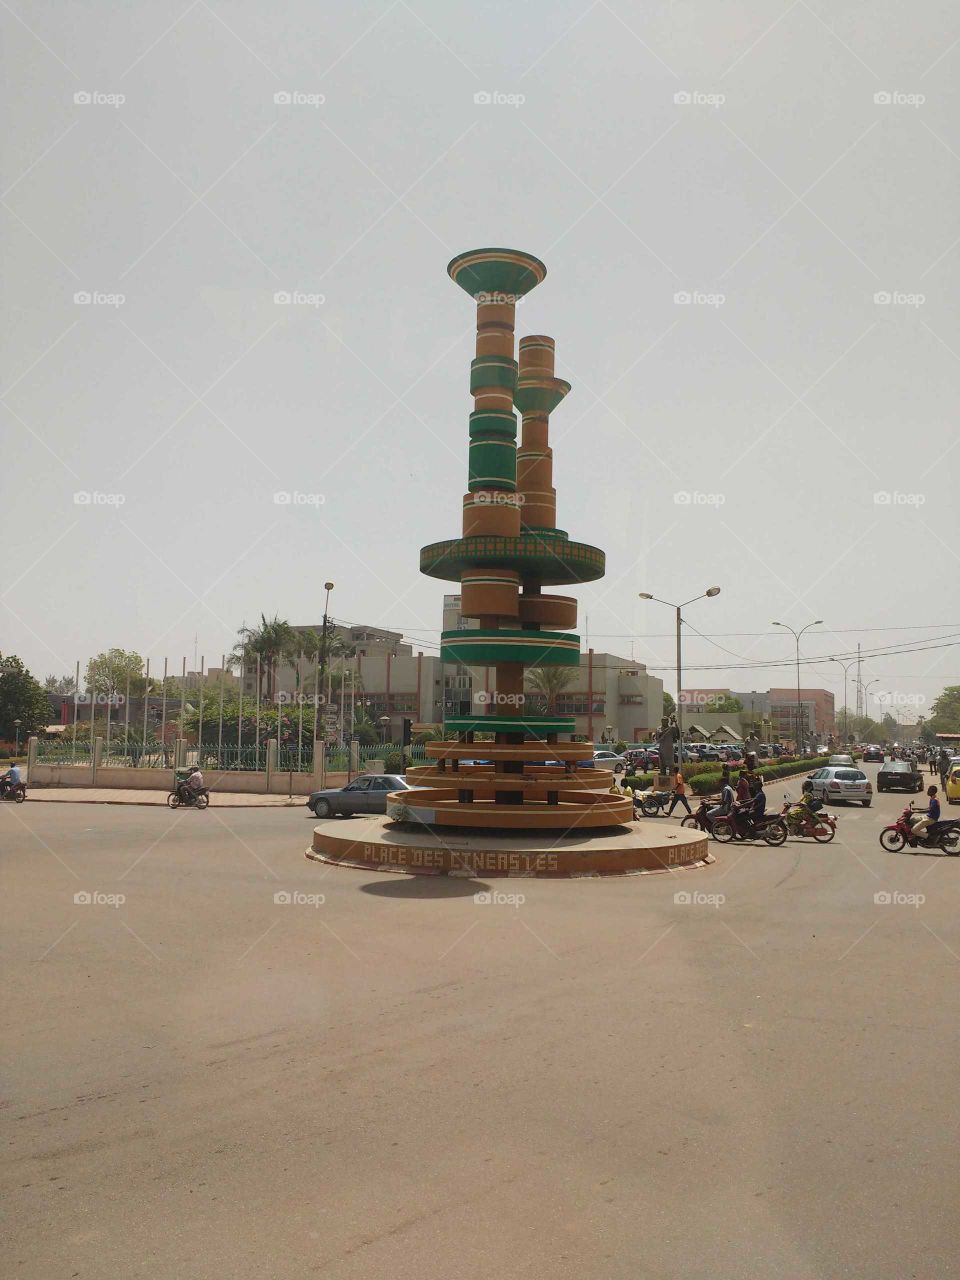 the FESPACO monument in Ouagadougou, Burkina Faso